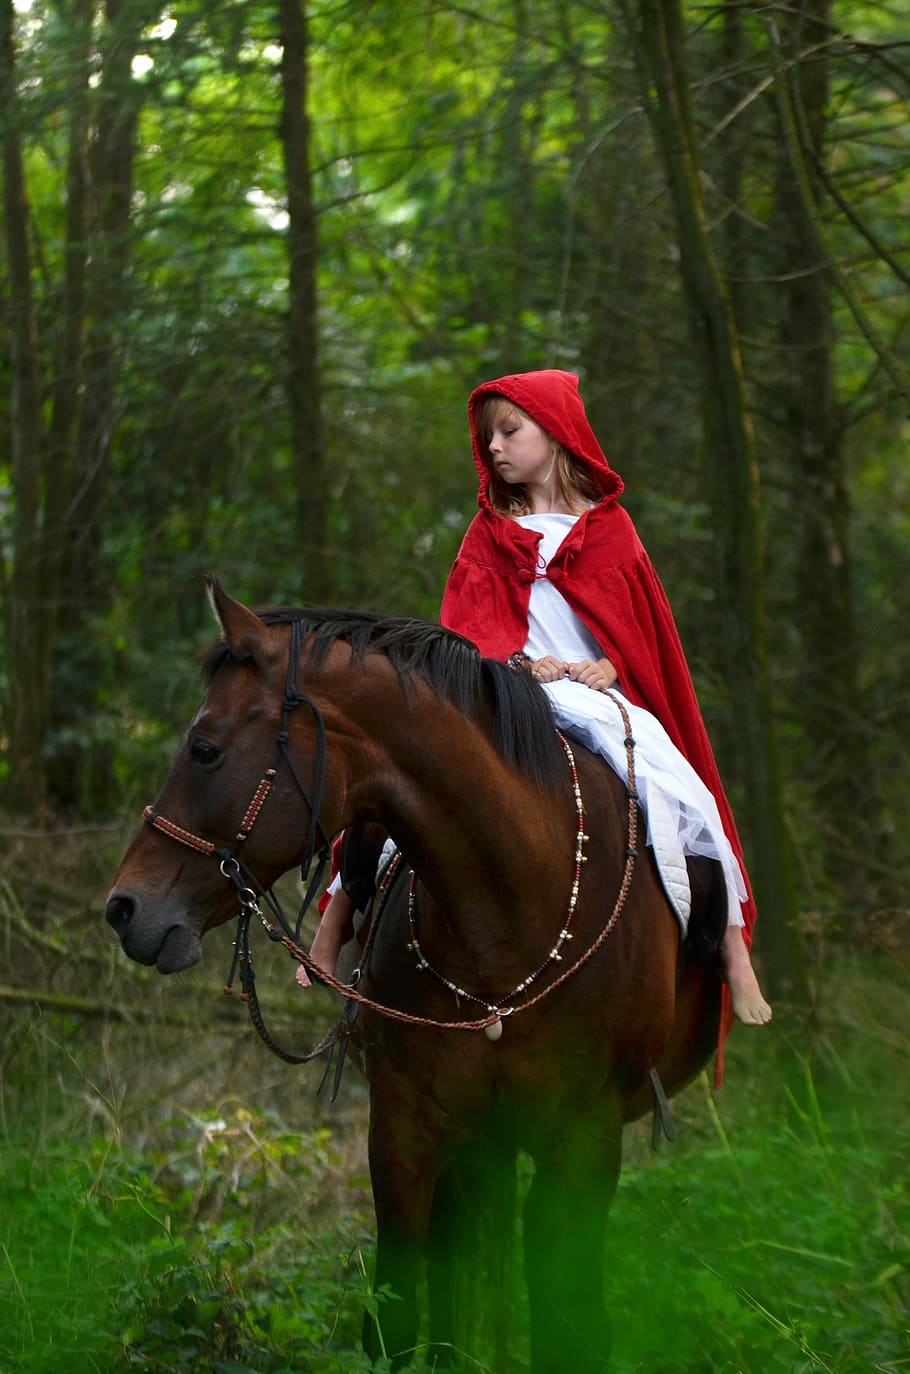 caballo, caballos, bosque, capucha roja, caperucita roja, cuento de hadas, cuentista, fantasía, naturaleza, niña